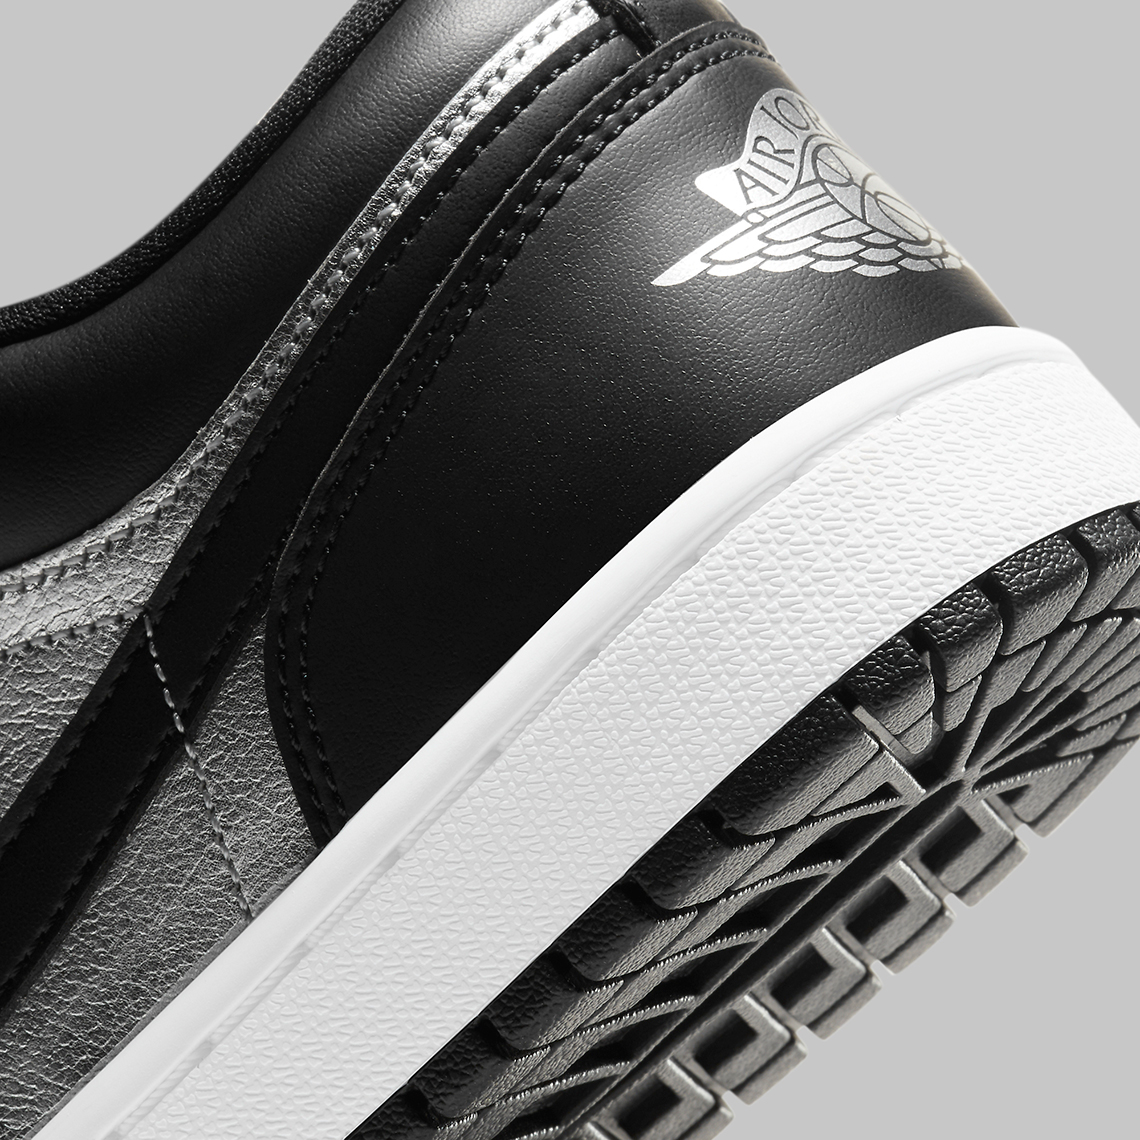 Air Jordan 1 Low Silver Toe Release Date | SneakerNews.com